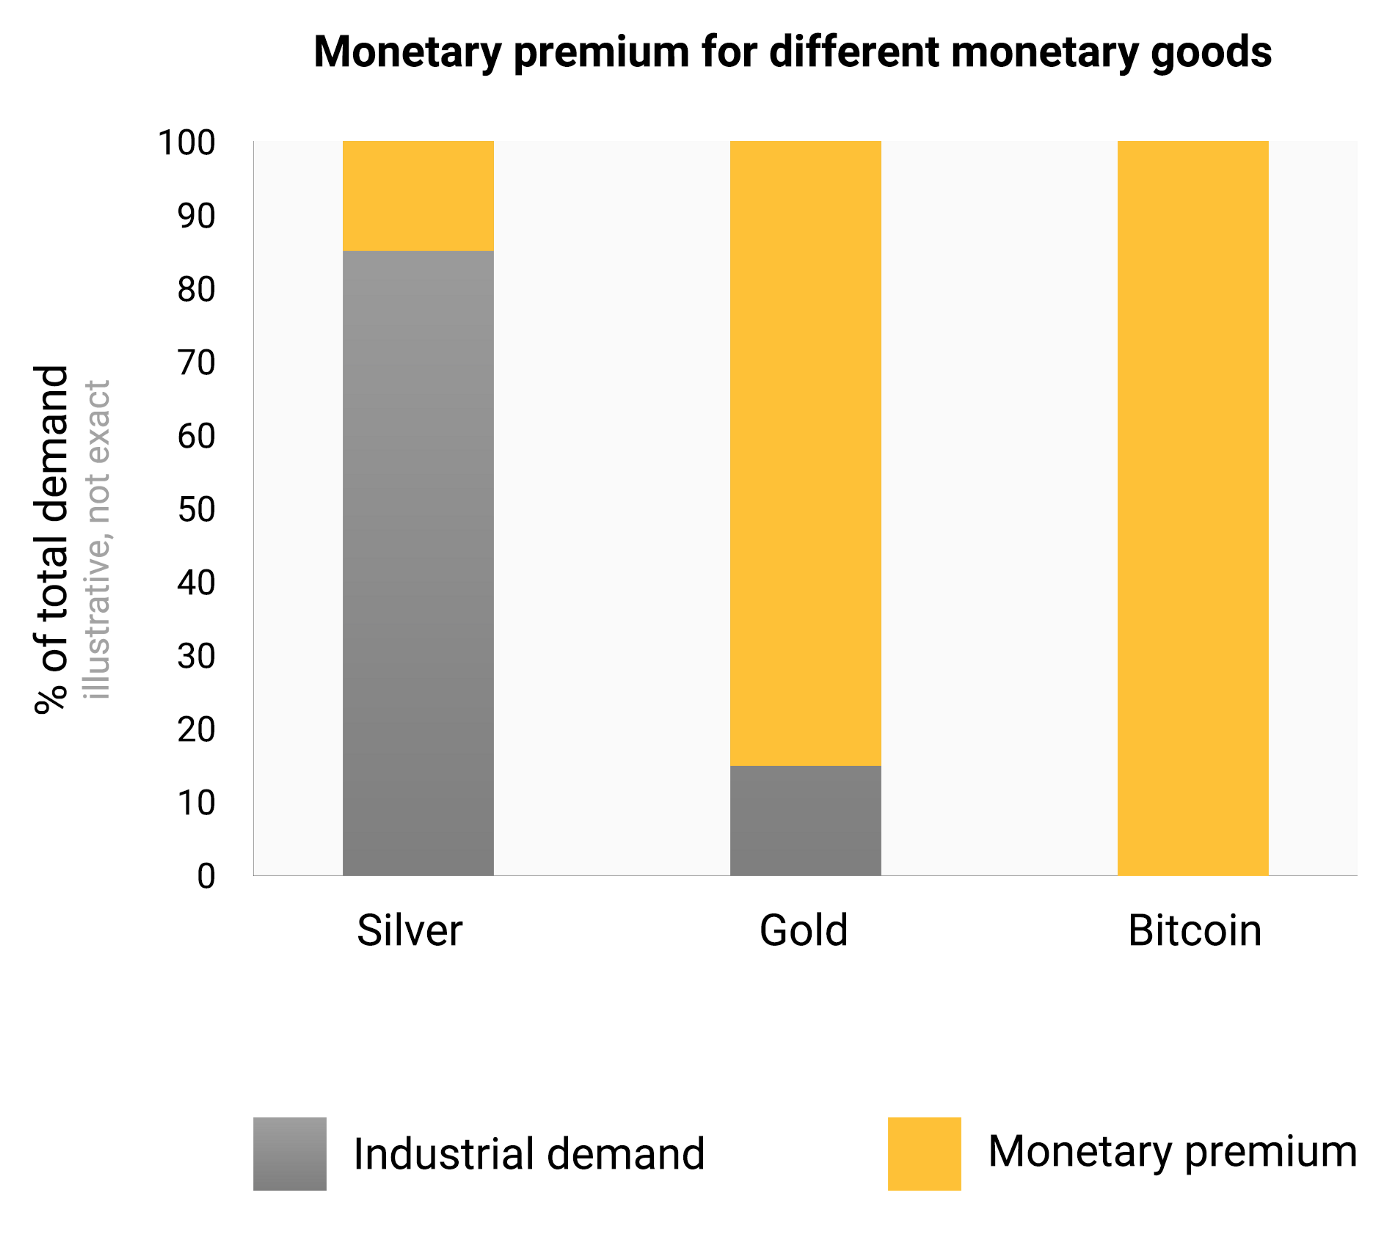 銀、金、ビットコインの総需要に占める産業需要と貨幣プレミアムとの割合